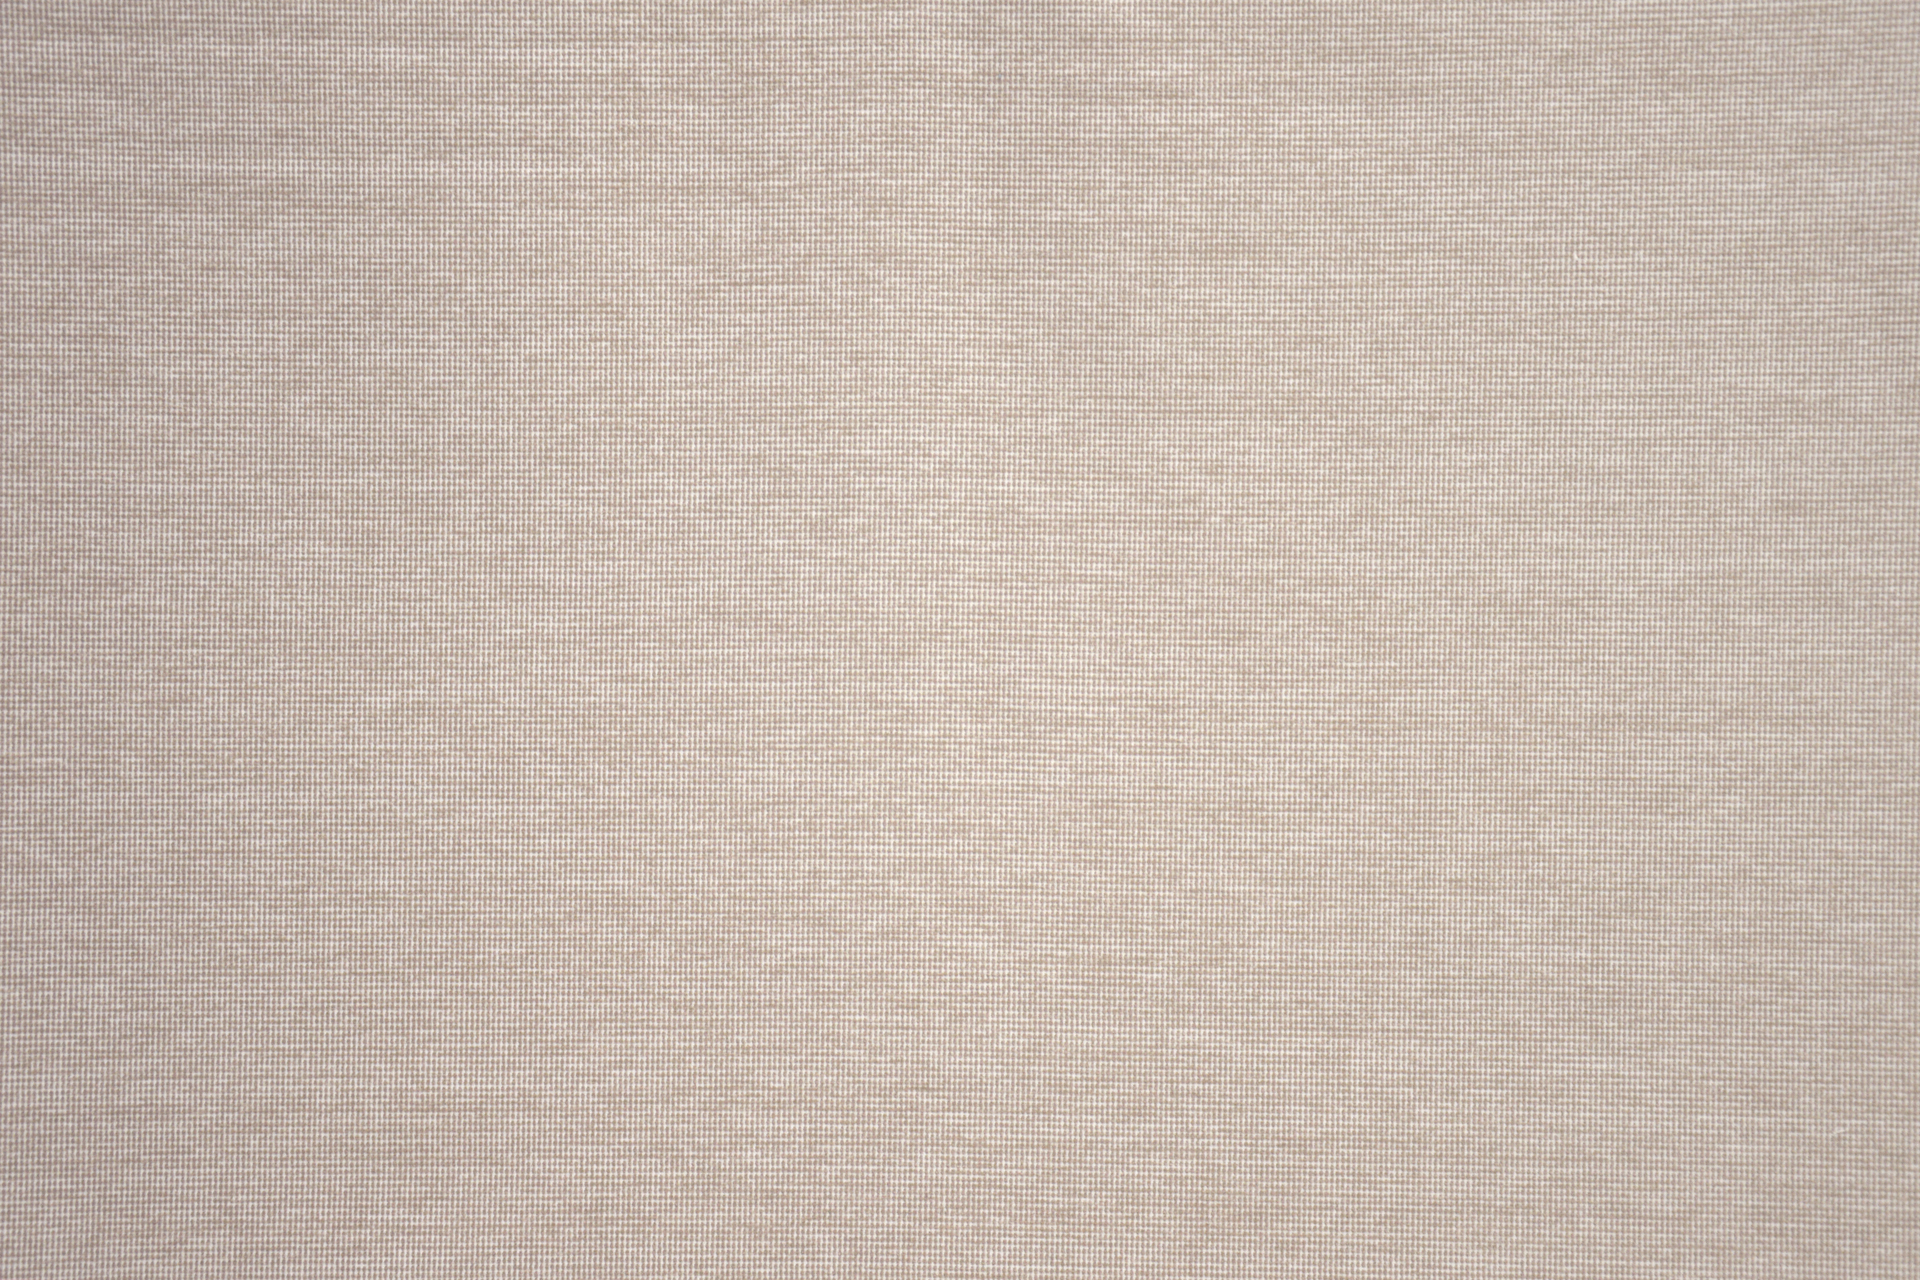 Lima tissu ameublement faux uni Aquaclean anti-tâche et lavable de Casal, pour chaise, fauteuil, canapé et rideaux, vendu par la rime des matieres, bon plan tissu